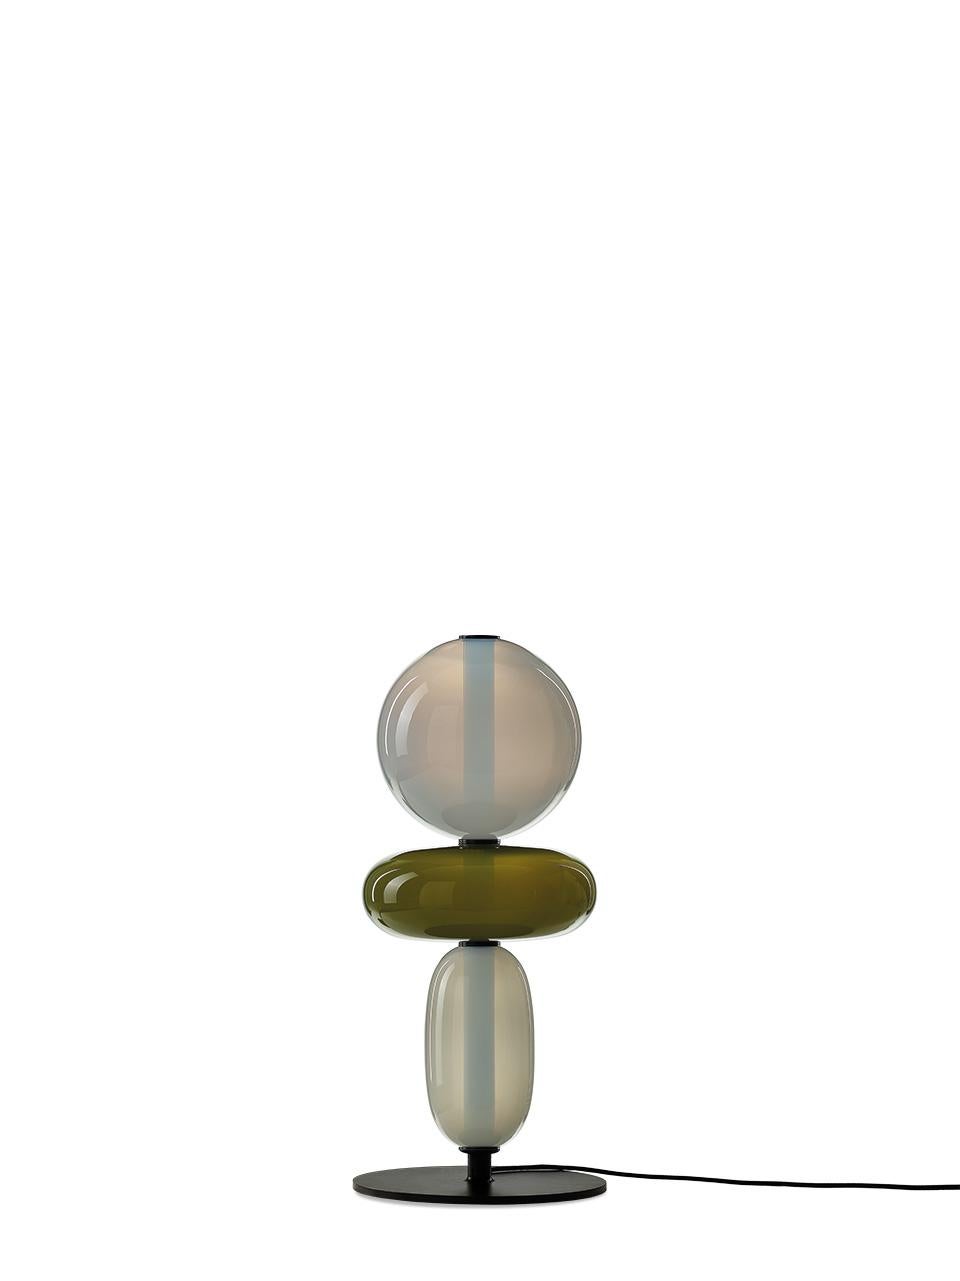 Zeitgenössische Stehleuchte aus geblasenem Kristallglas - Pebbles von Boris Klimek für Bomma

Kieselsteine erinnern an besondere Momente oder Lieblingsorte. Ihre vielfältigen Formen und Farben haben BOMMA zu einer spielerischen Kollektion